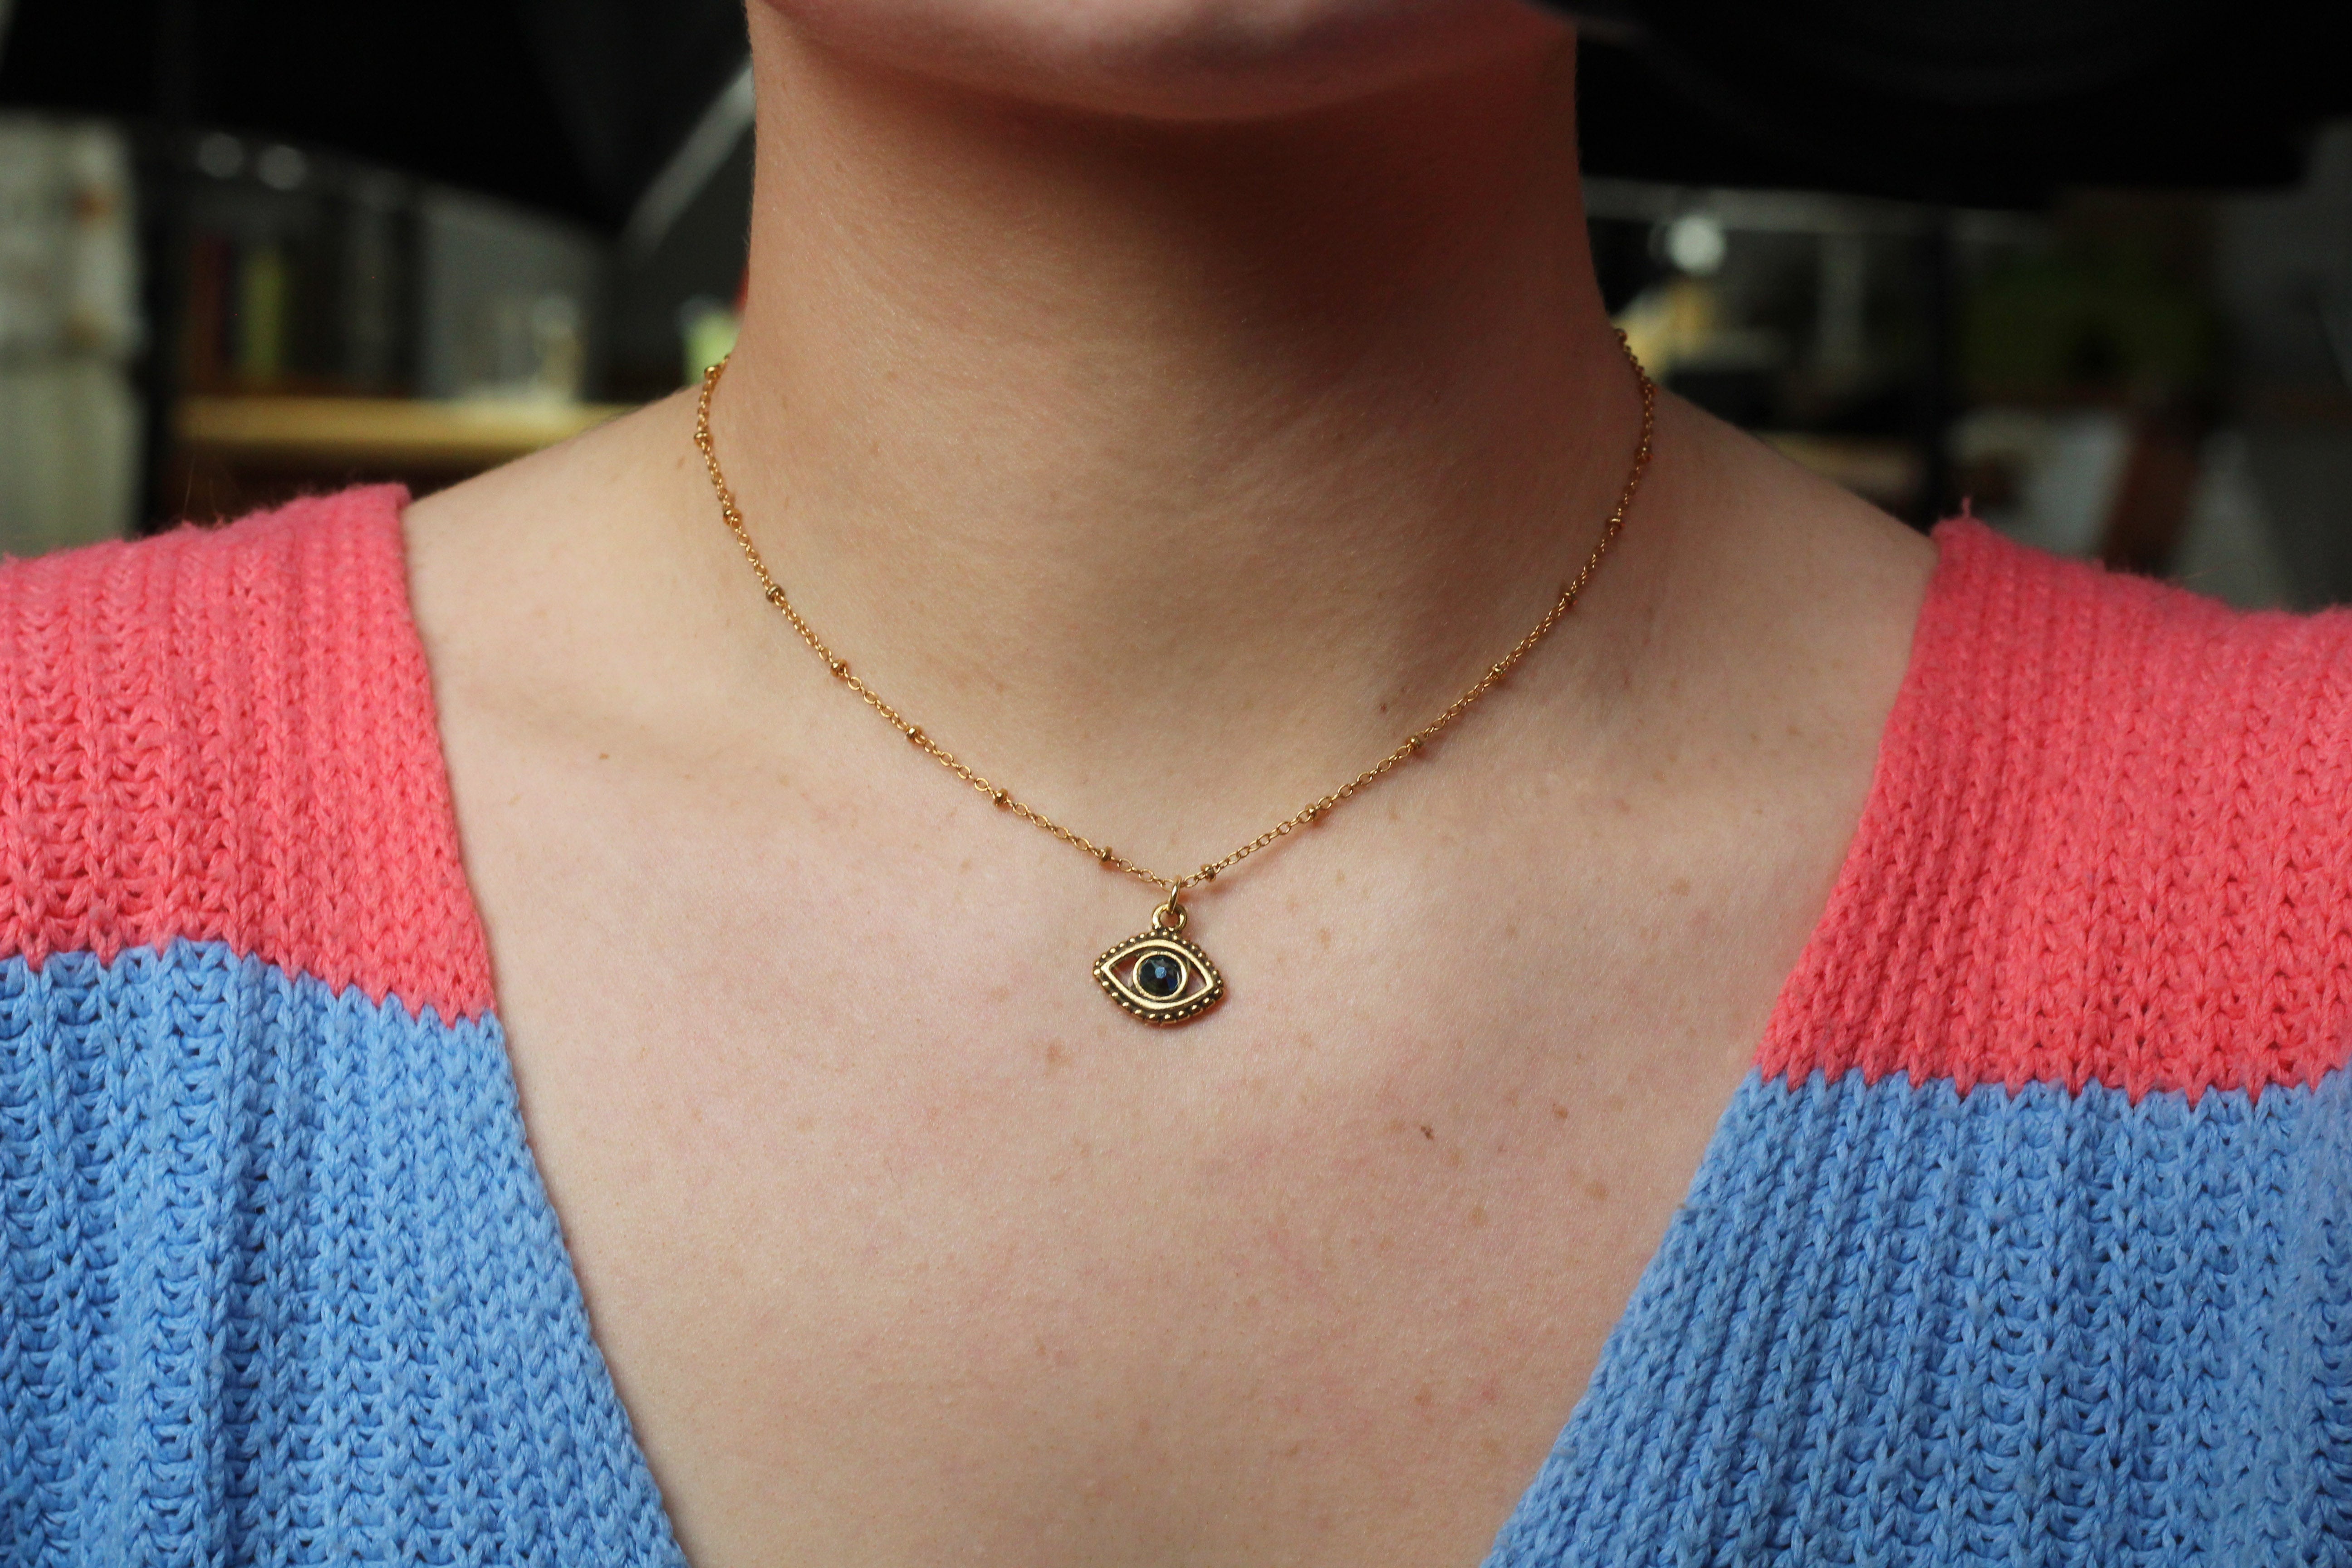 Dogeared Swarovski Crystal Make a Wish Evil Eye Necklace, 18